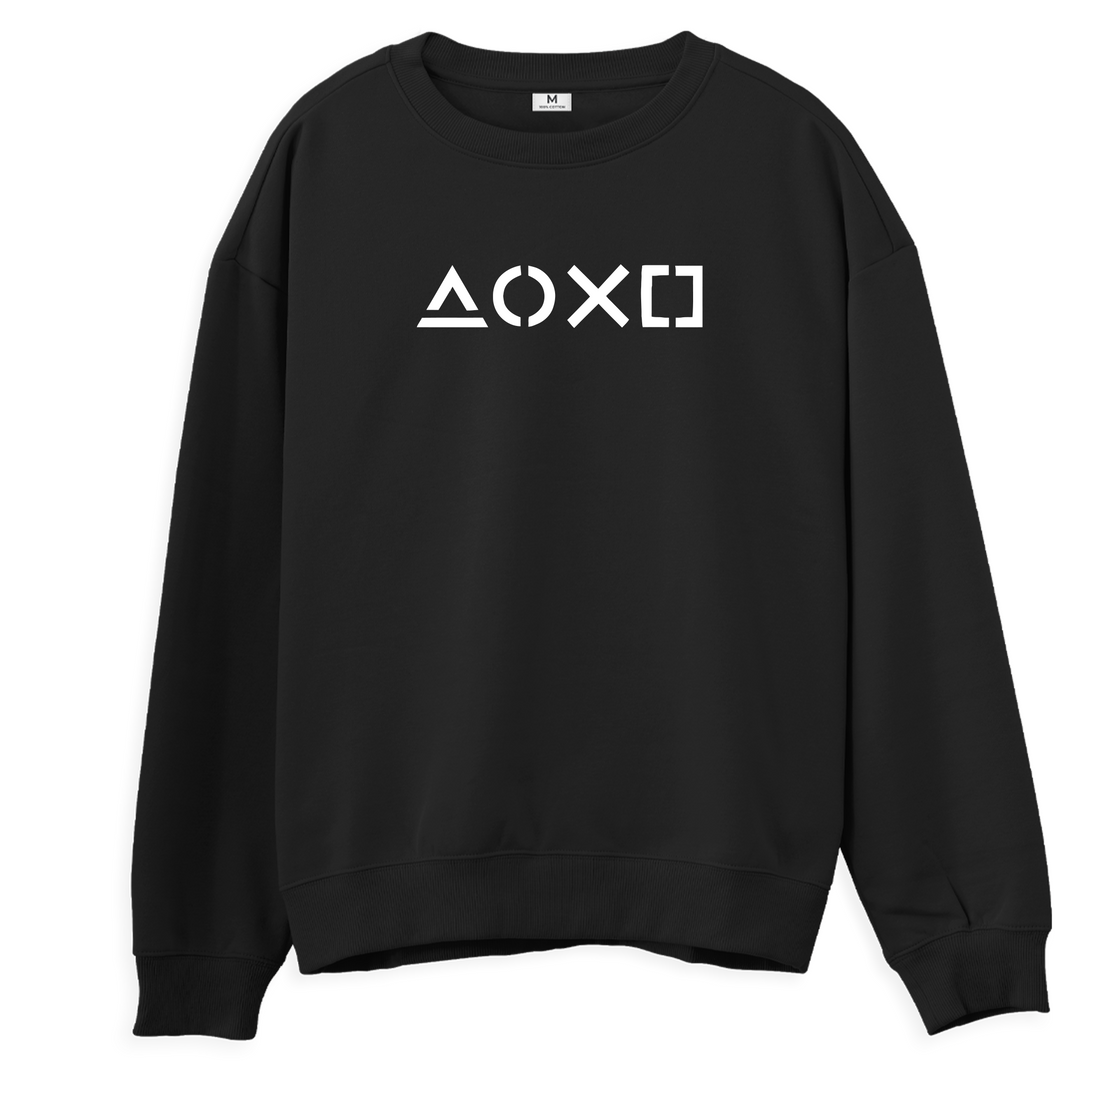 Playstation II - Regular Sweatshirt